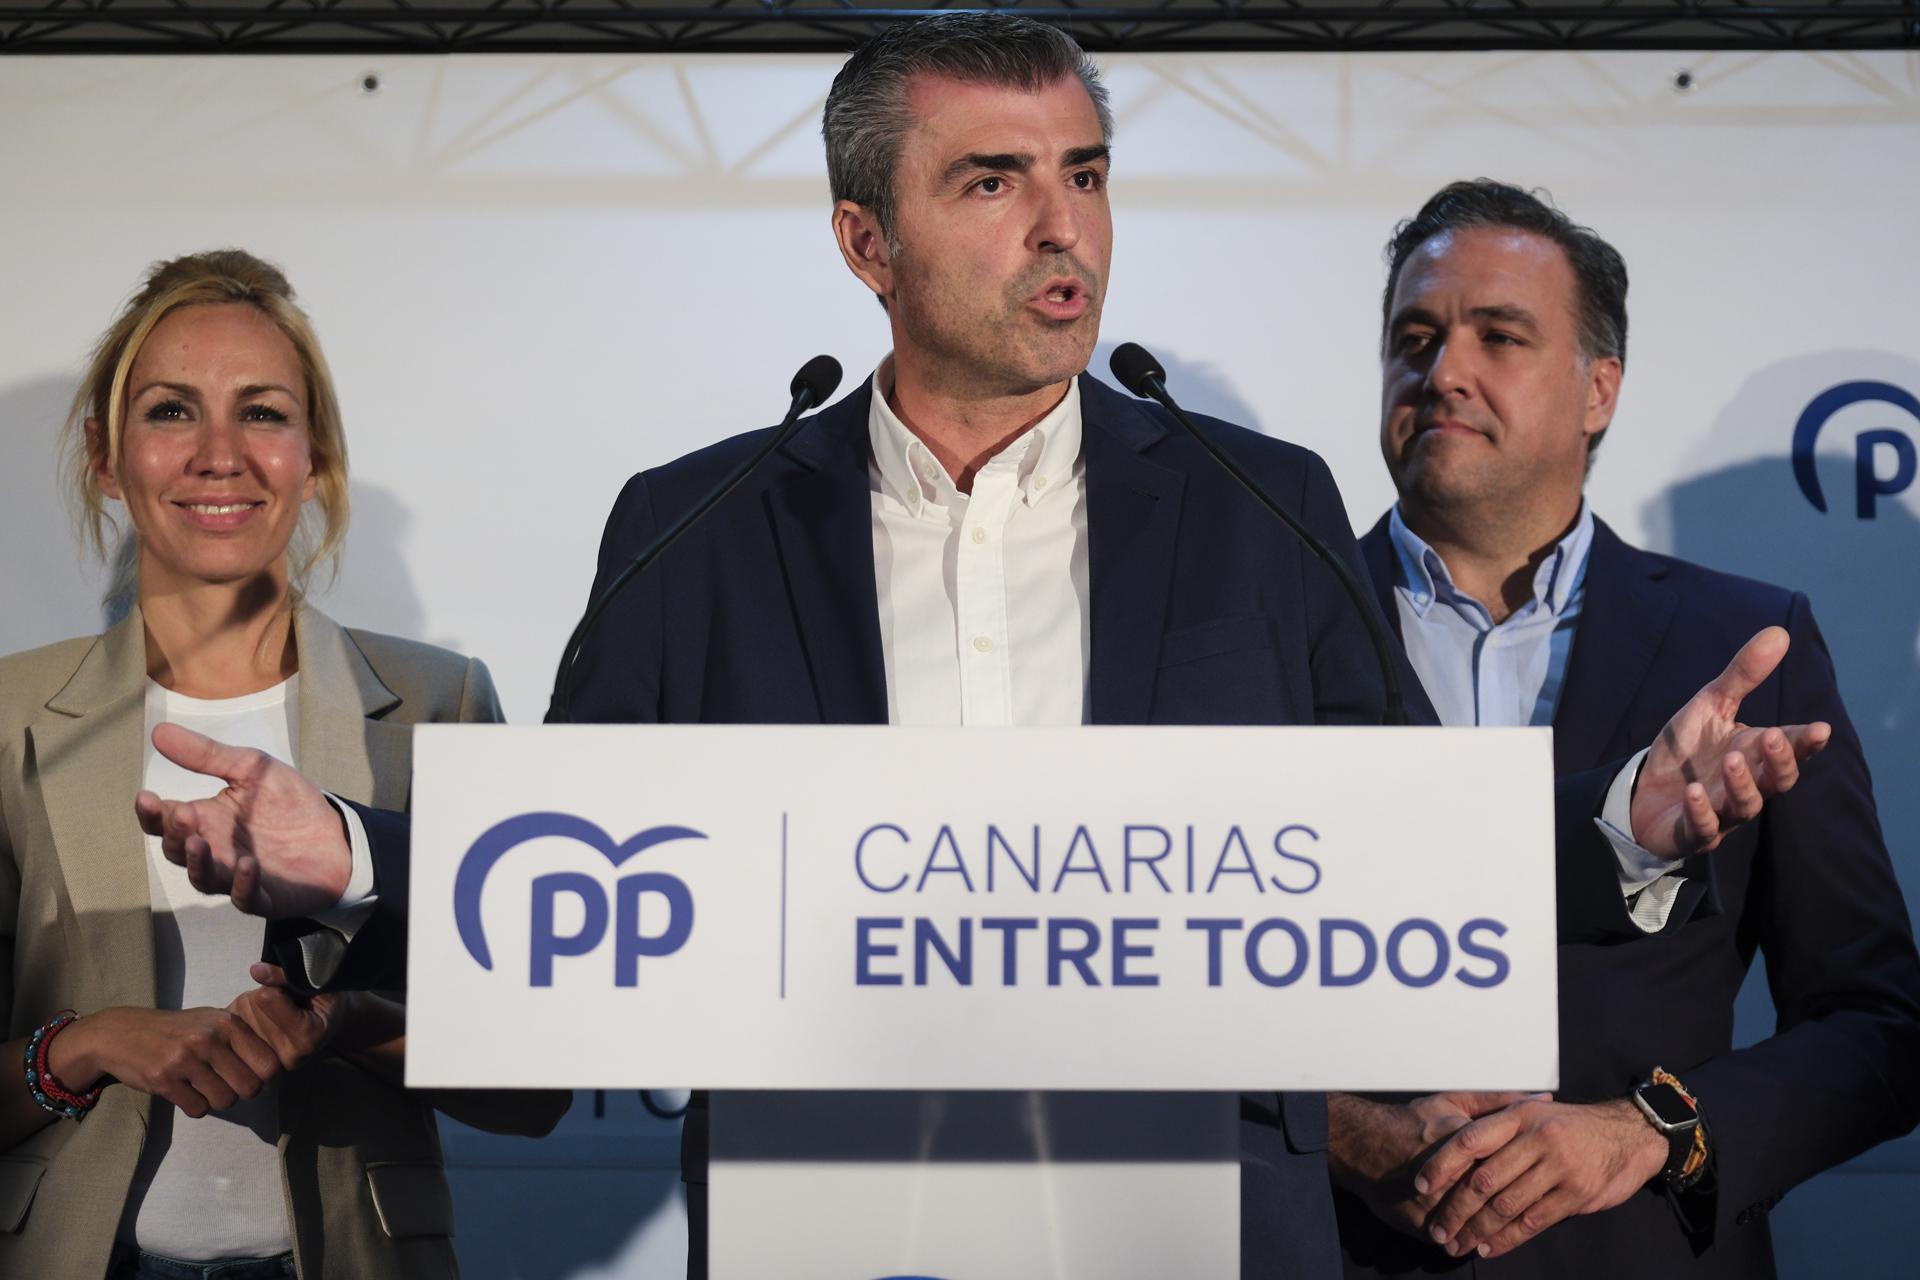 El candidato a la presidencia del Gobierno de Canarias por el Partido Popular, Manuel Domínguez (c), ha valorado en rueda de prensa junto con otros compañeros de su partido los resultados de las elecciones autonómicas y locales. EFE/Alberto Valdés